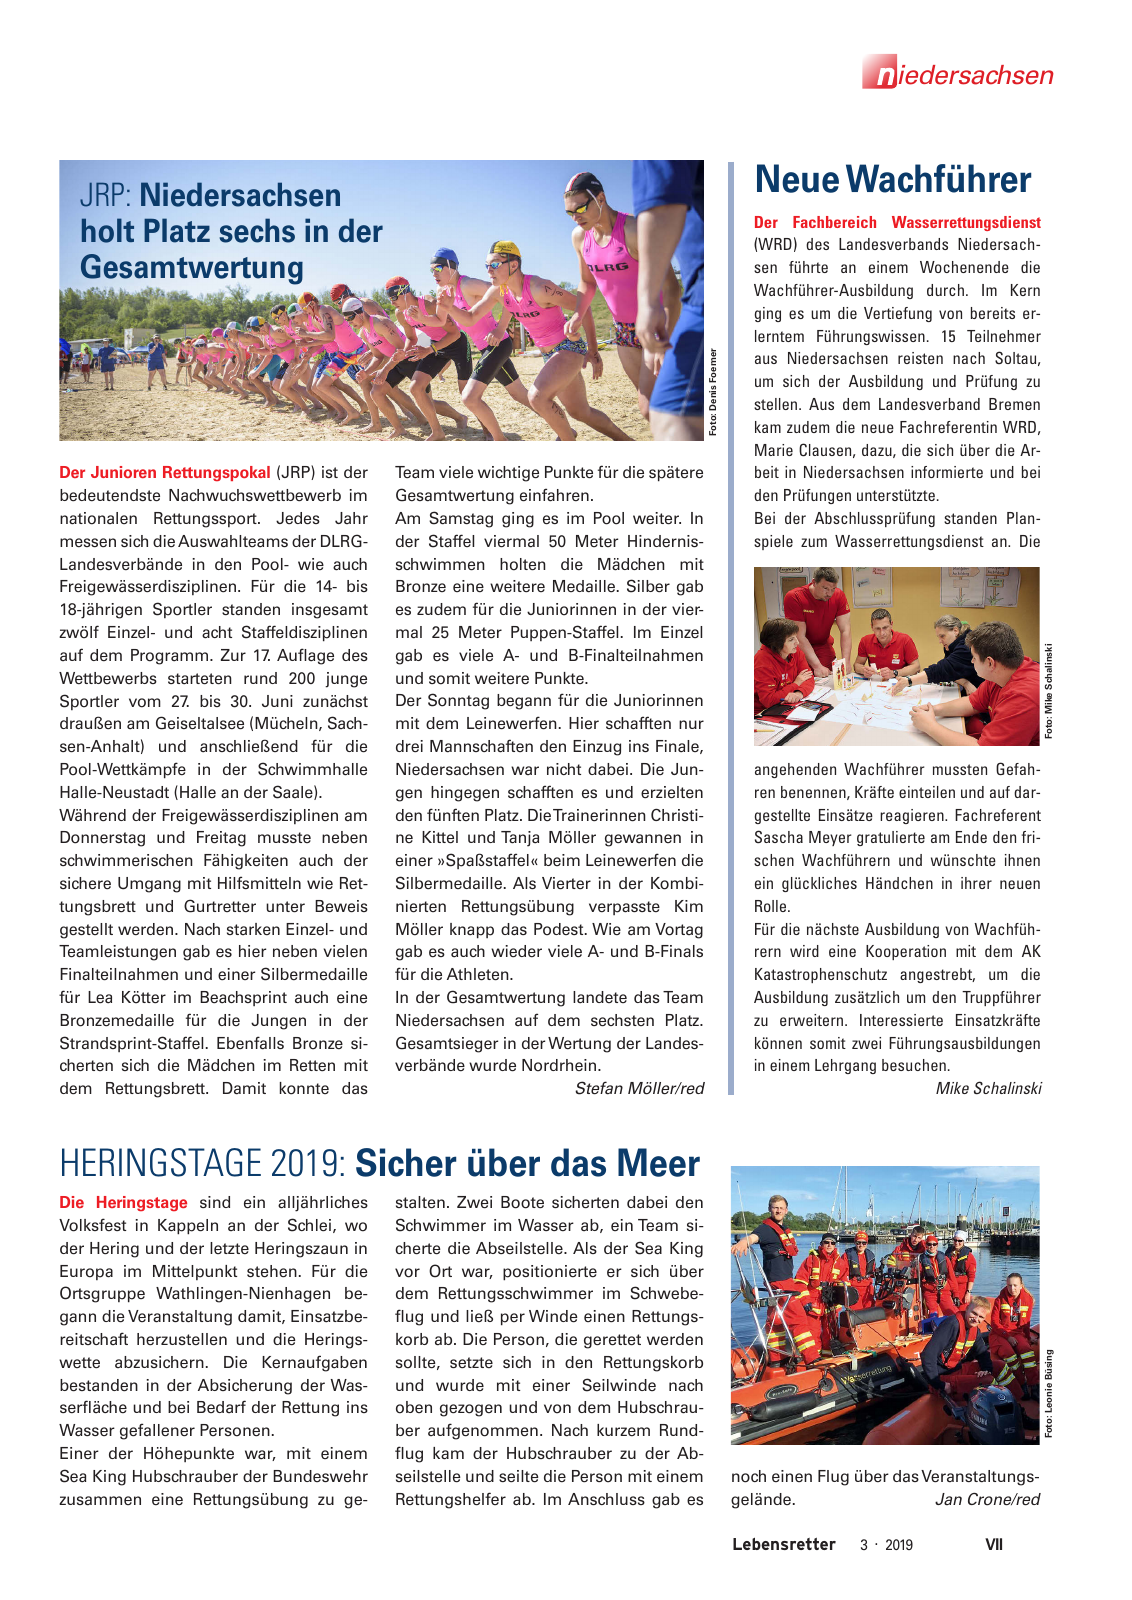 Vorschau Lebensretter 3/2019 - Niedersachsen Regionalausgabe Seite 9